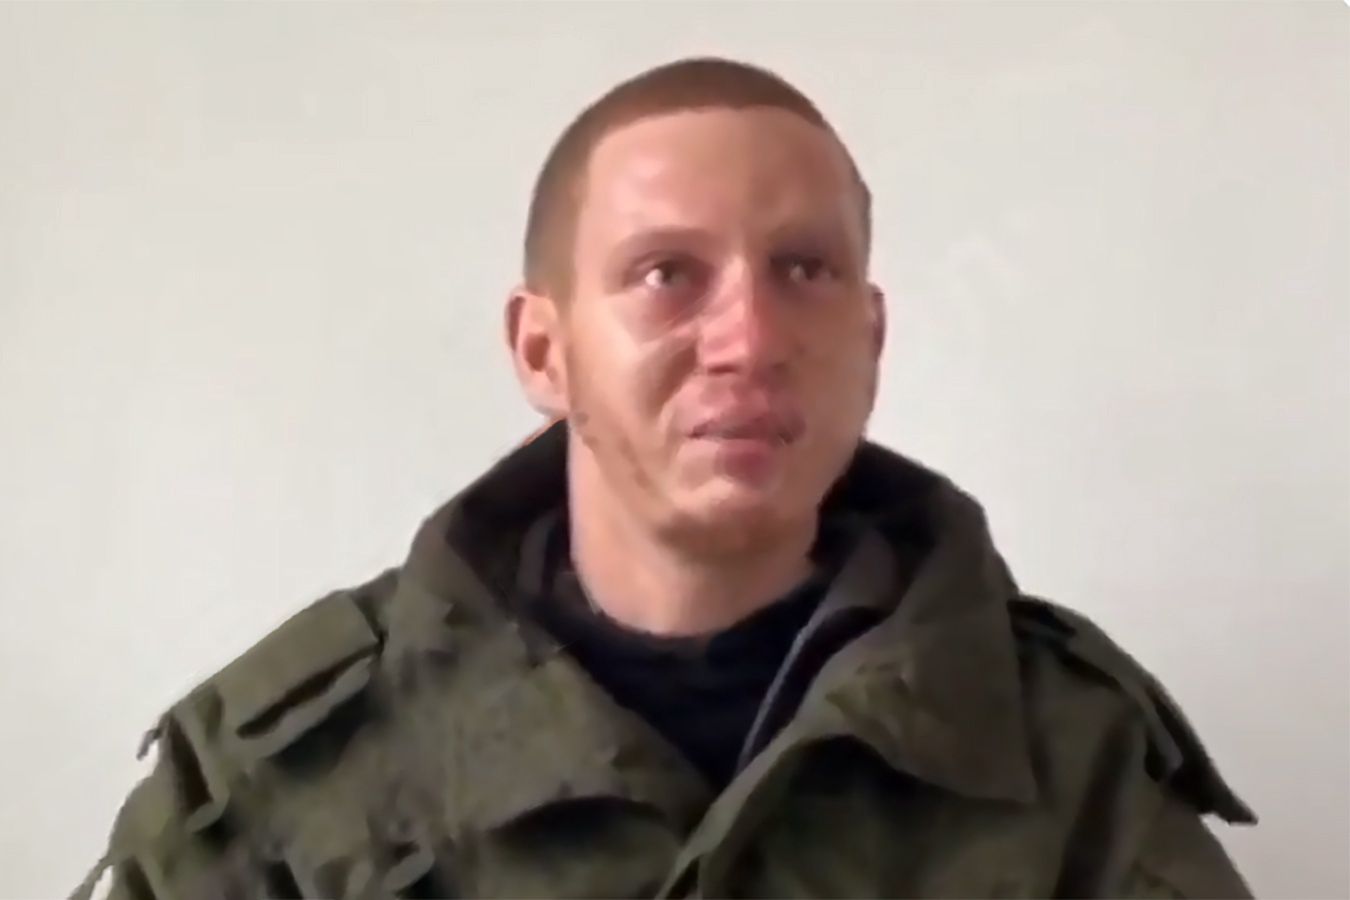 Rosyjski żołnierz o ukraińskiej niewoli. "Dali nam nawet zapalić"